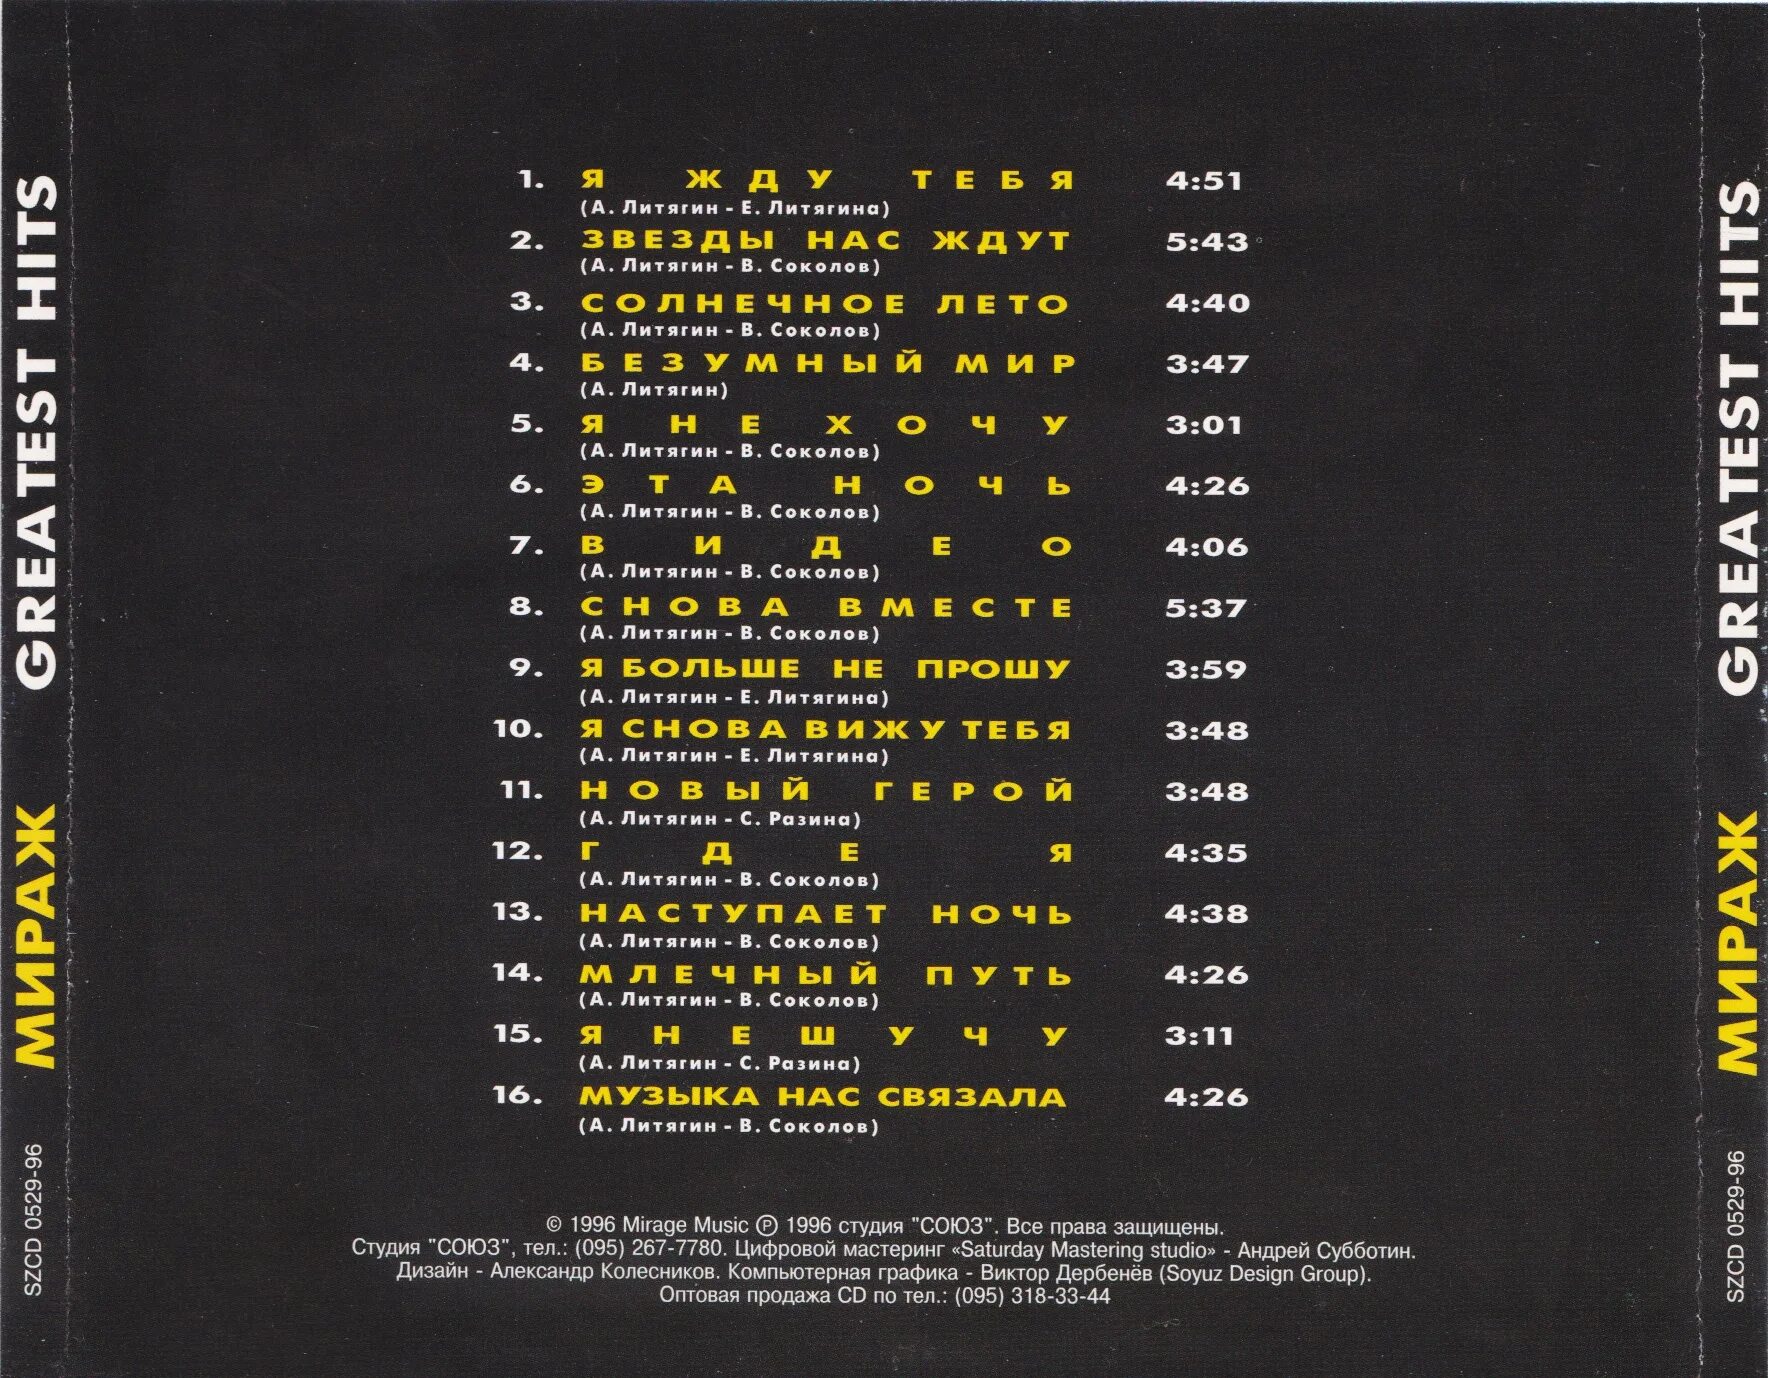 Мираж 1997.Greatest Hits. Мираж 1996 - Greatest Hits CD обложка. Мираж "Greatest Hits" 1996 Союз. Группа Мираж 1996 Greatest Hits. Виден мираж текст